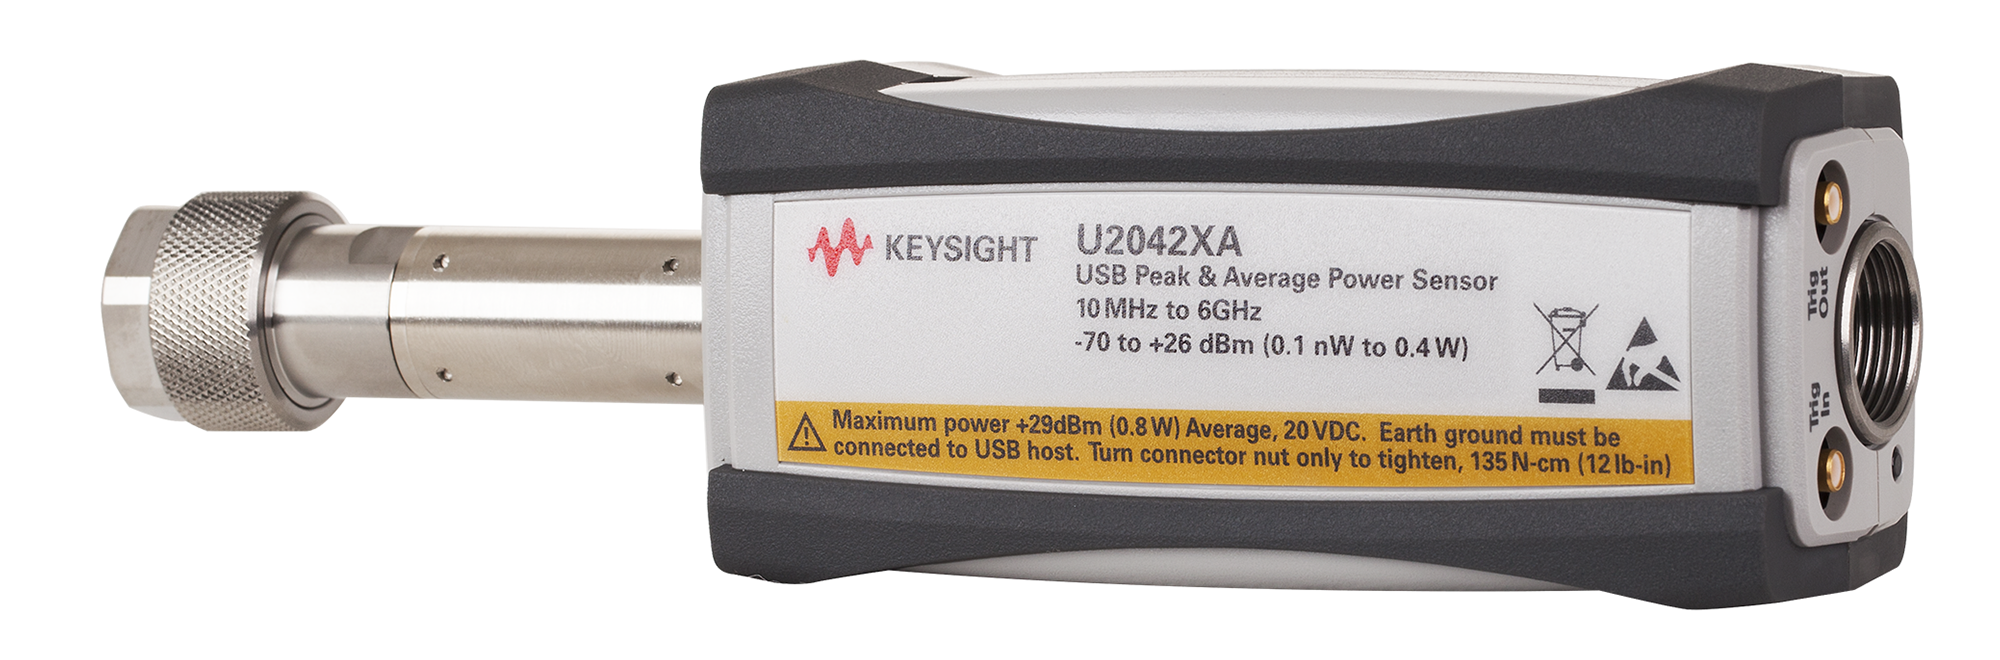 KEYSIGHT U2042XA USB峰值功率和平均功率传感器